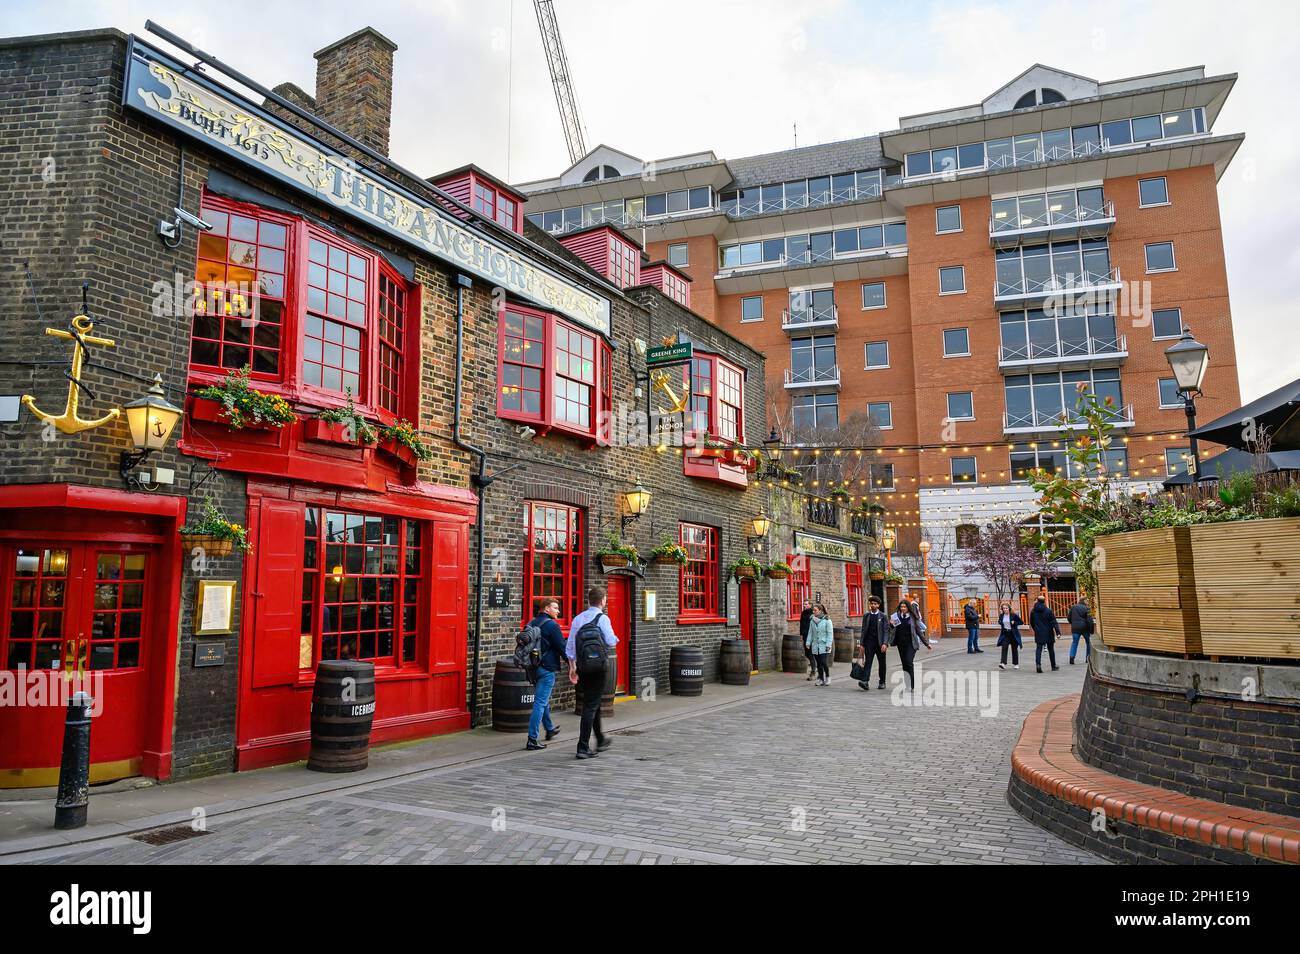 Londra, Regno Unito: Il pub Anchor su Bankside a Southwark. Si tratta di un tradizionale vecchio pub londinese vicino al Tamigi. Foto Stock